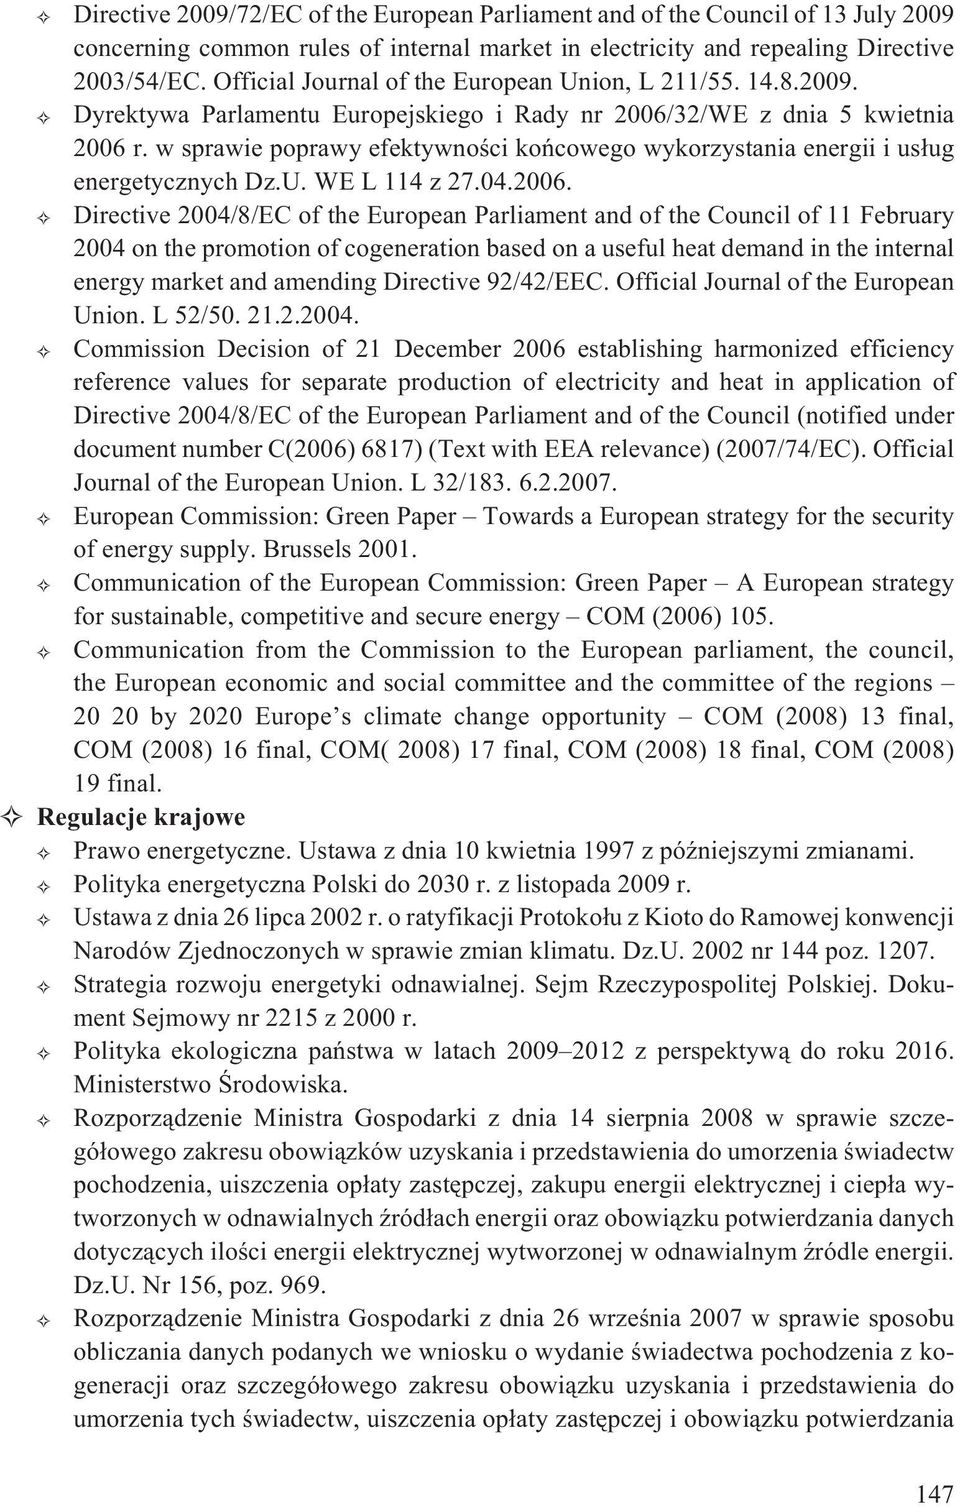 w sprawie poprawy efektywnoœci koñcowego wykorzystania energii i us³ug energetycznych Dz.U. WE L 114 z 27.04.2006.